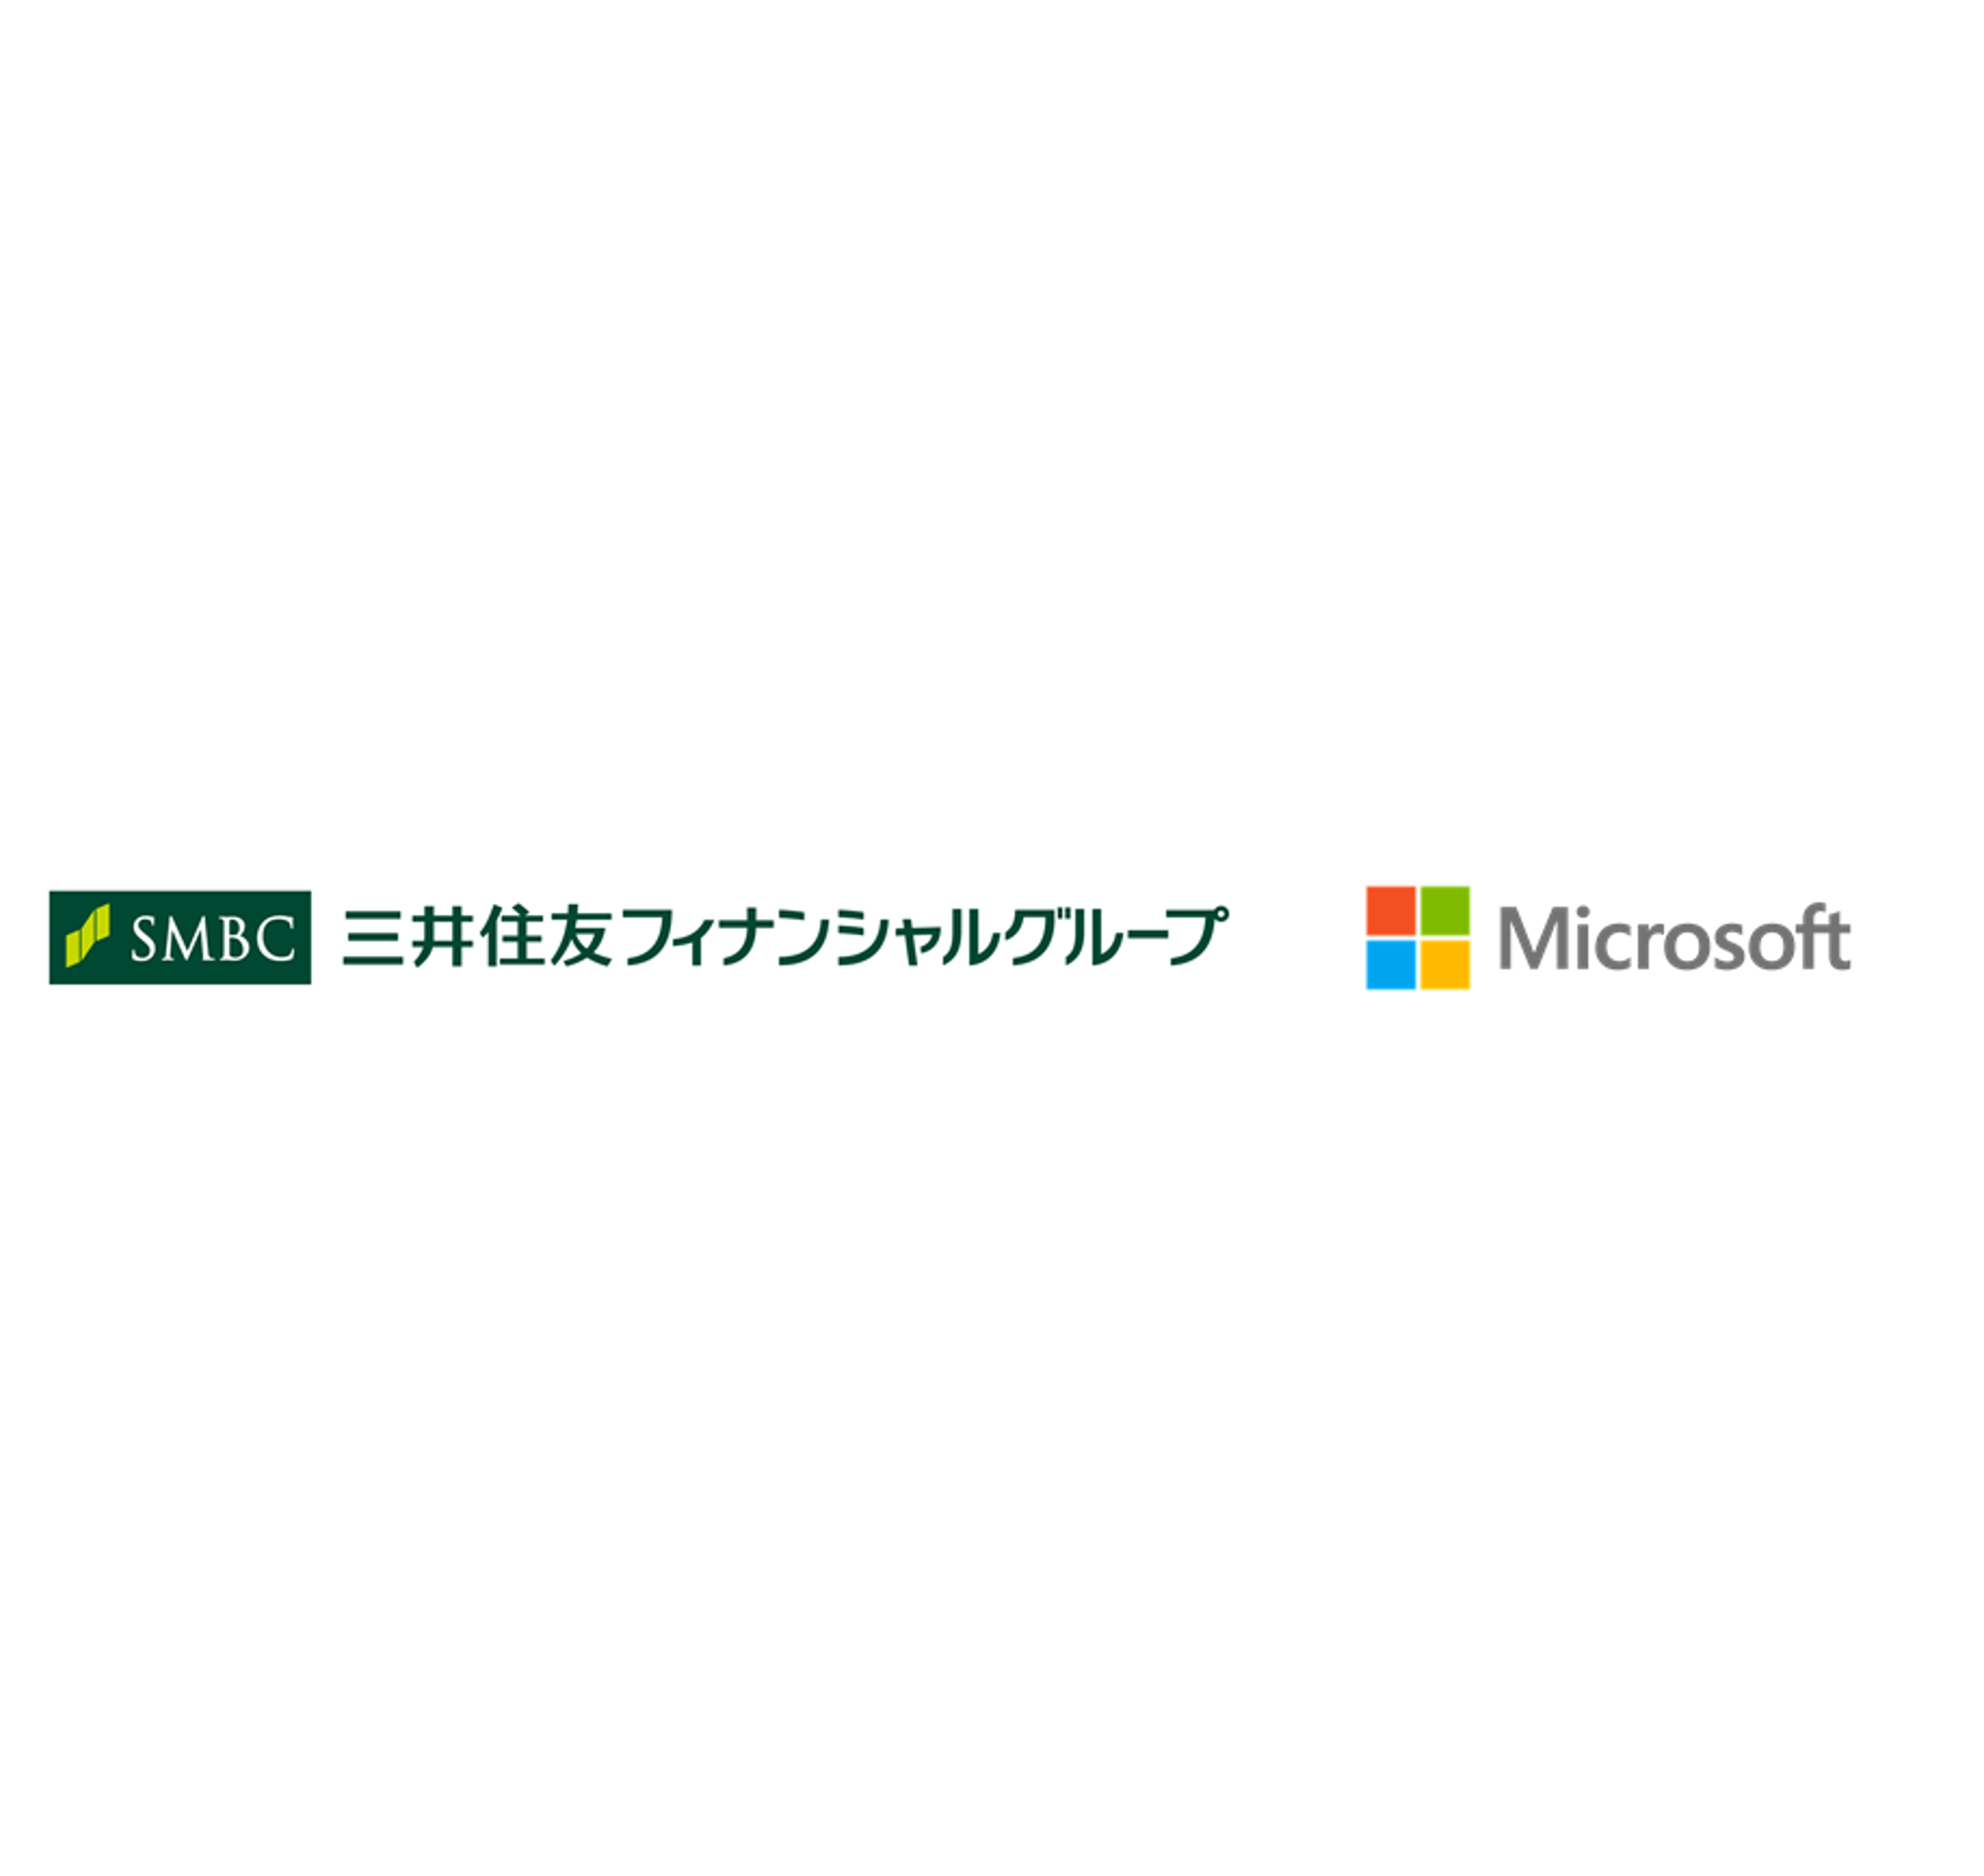 三井住友フィナンシャルグループ、マイクロソフトとの戦略的提携によりデジタルトランスフォーメーションを加速